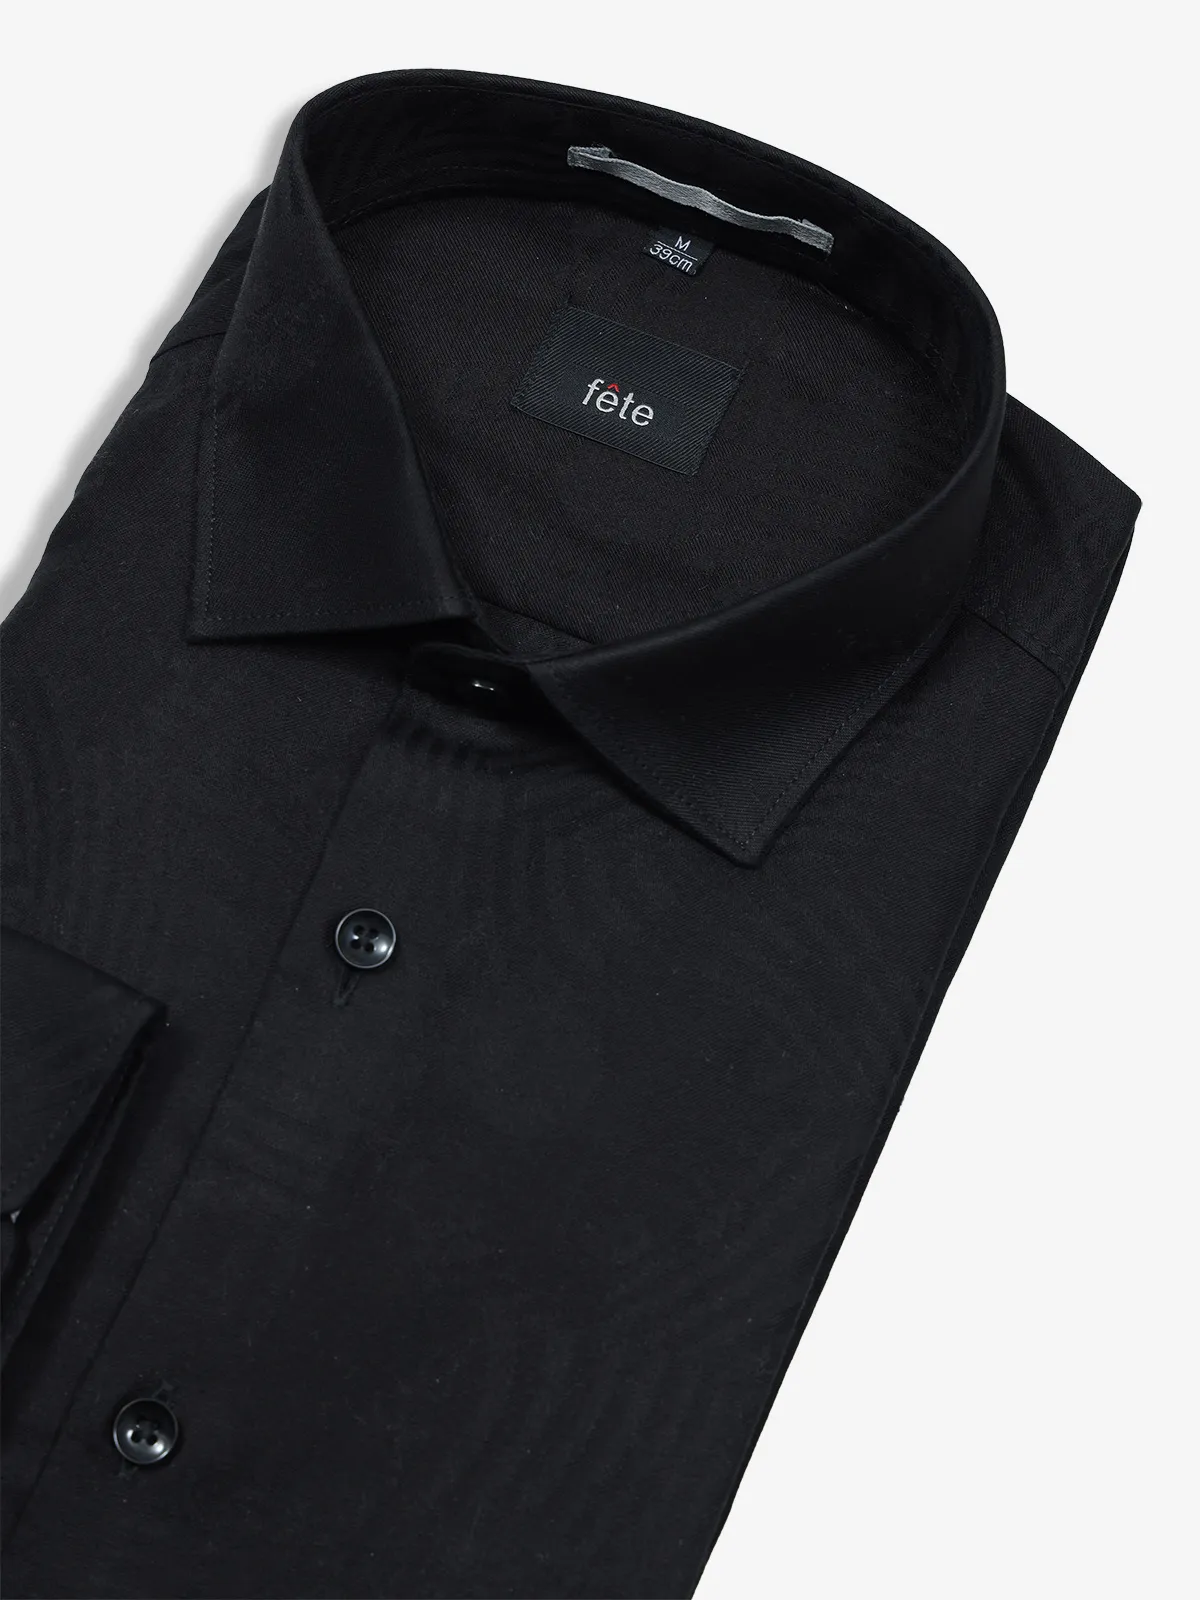 FETE plain cotton black formal shirt